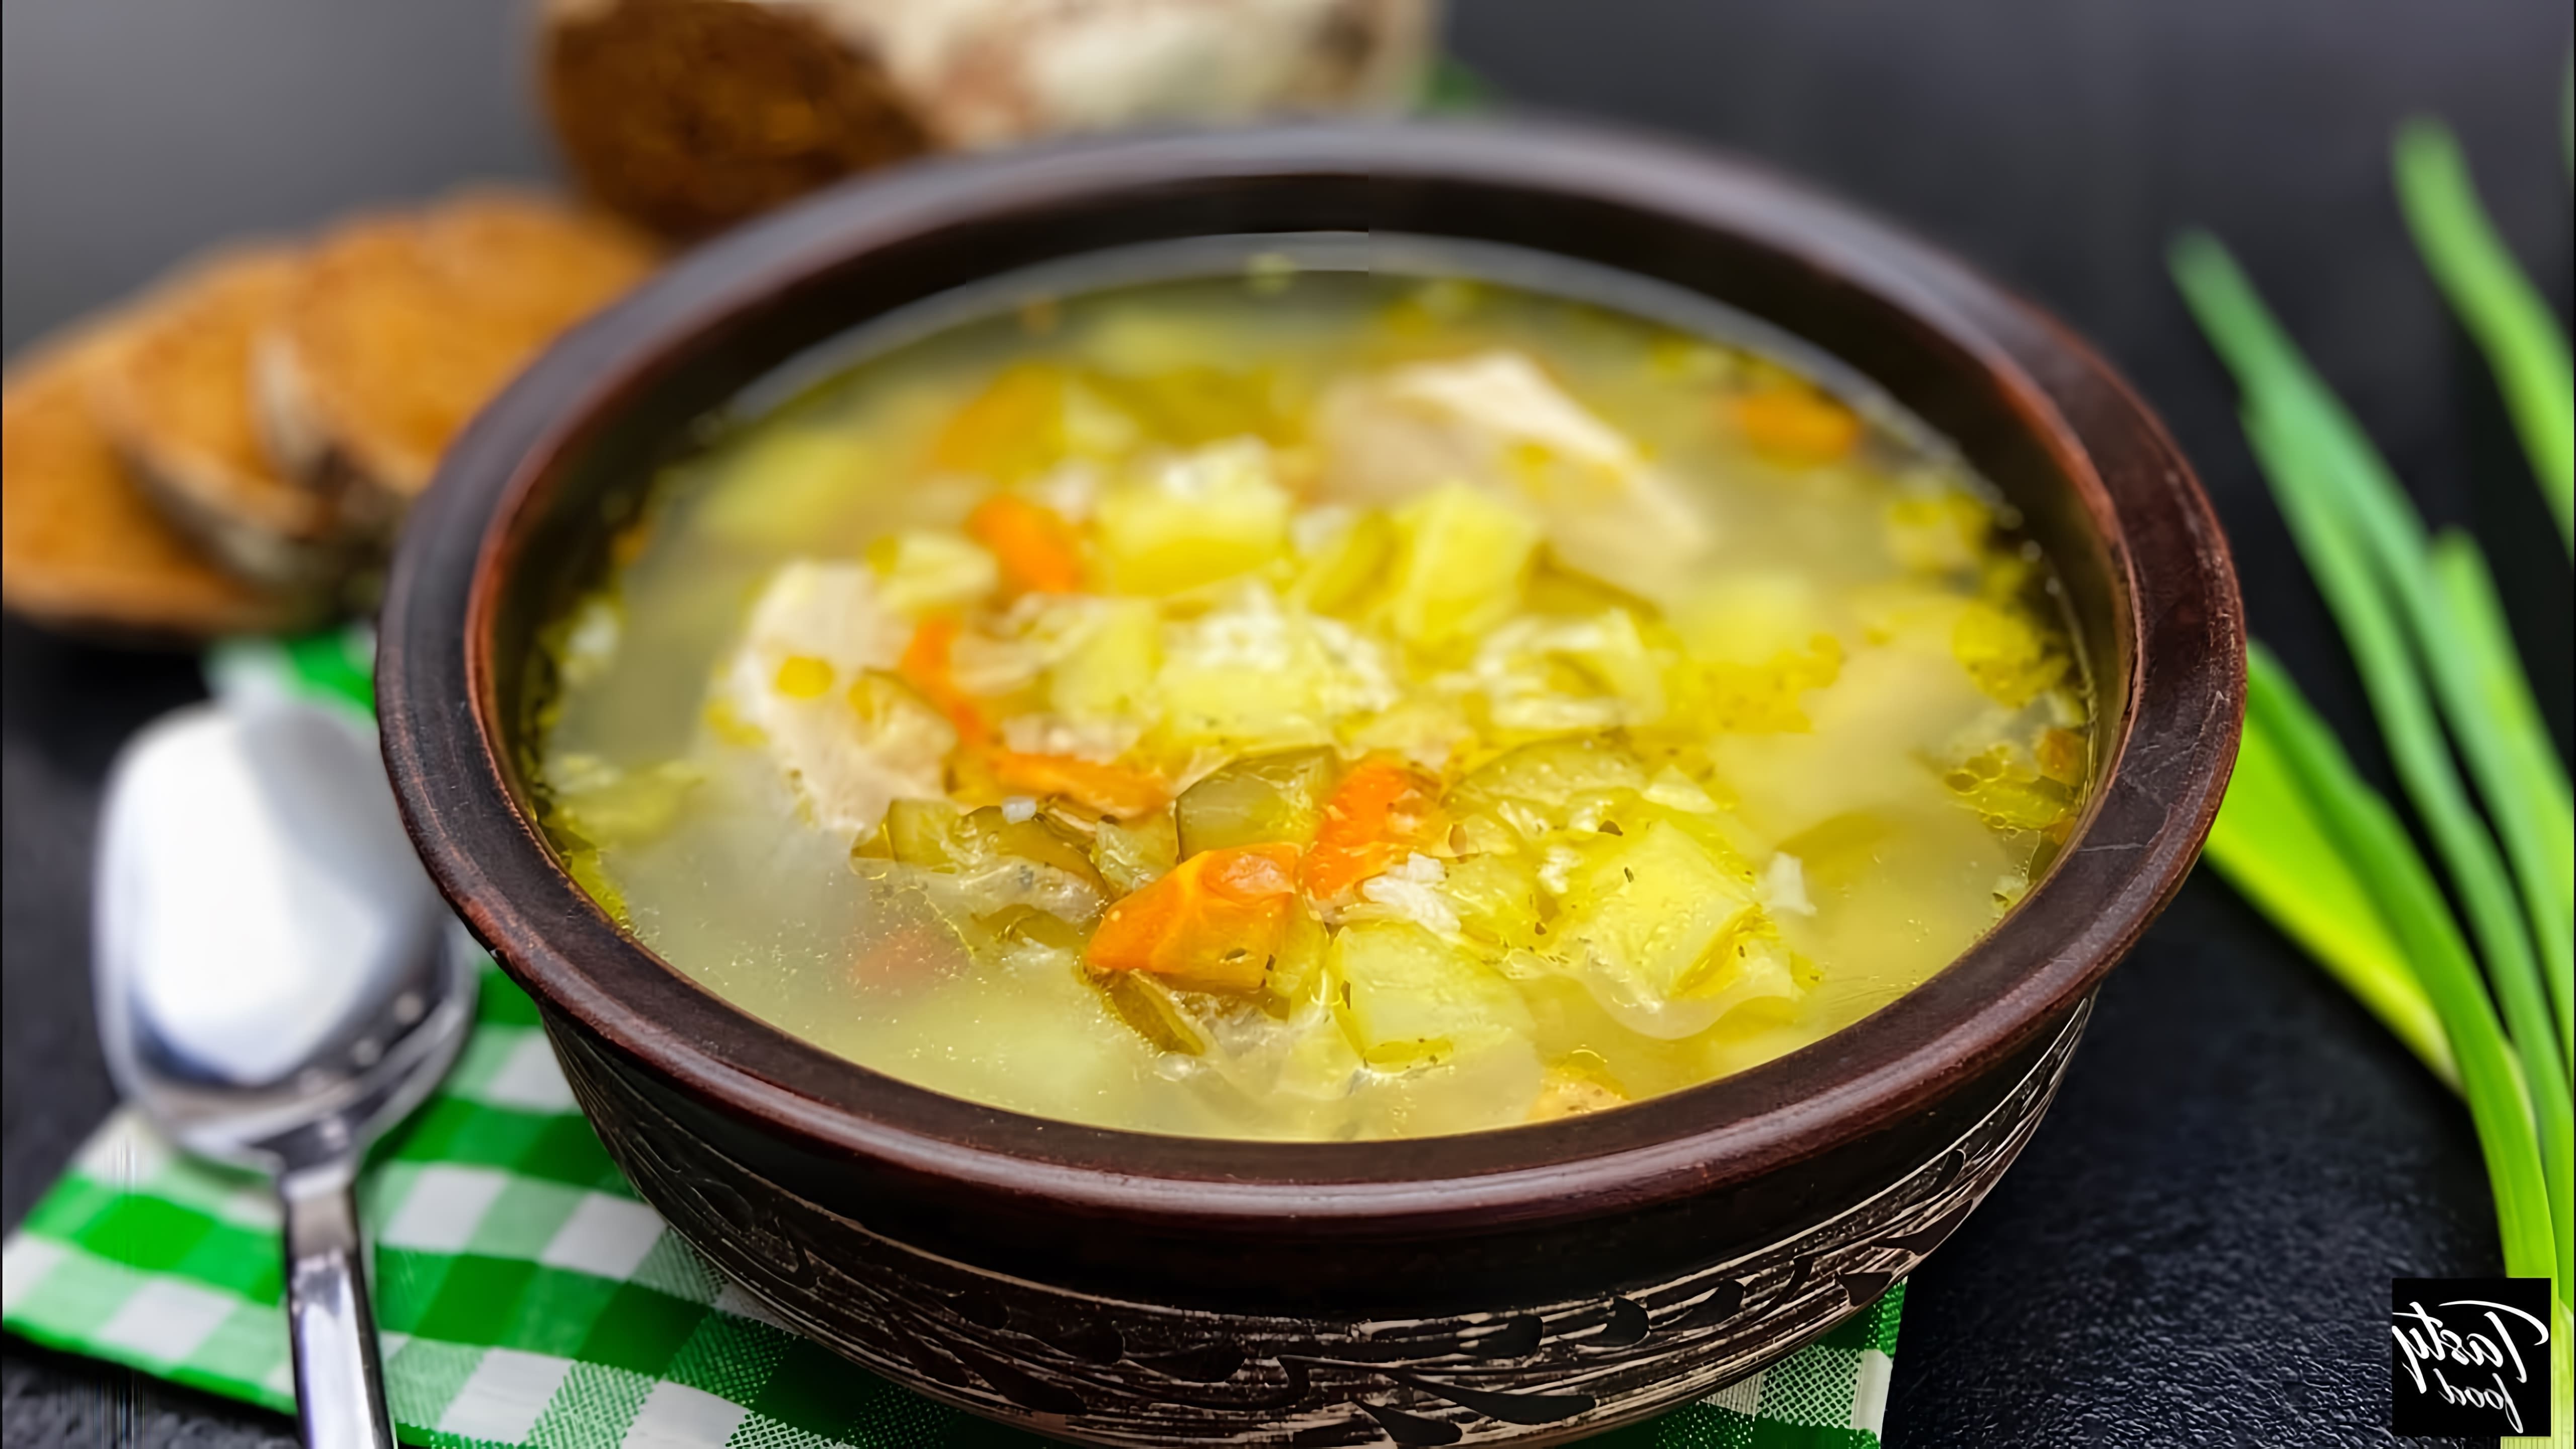 В этом видео демонстрируется рецепт приготовления вкусного зимнего супа - рассольника